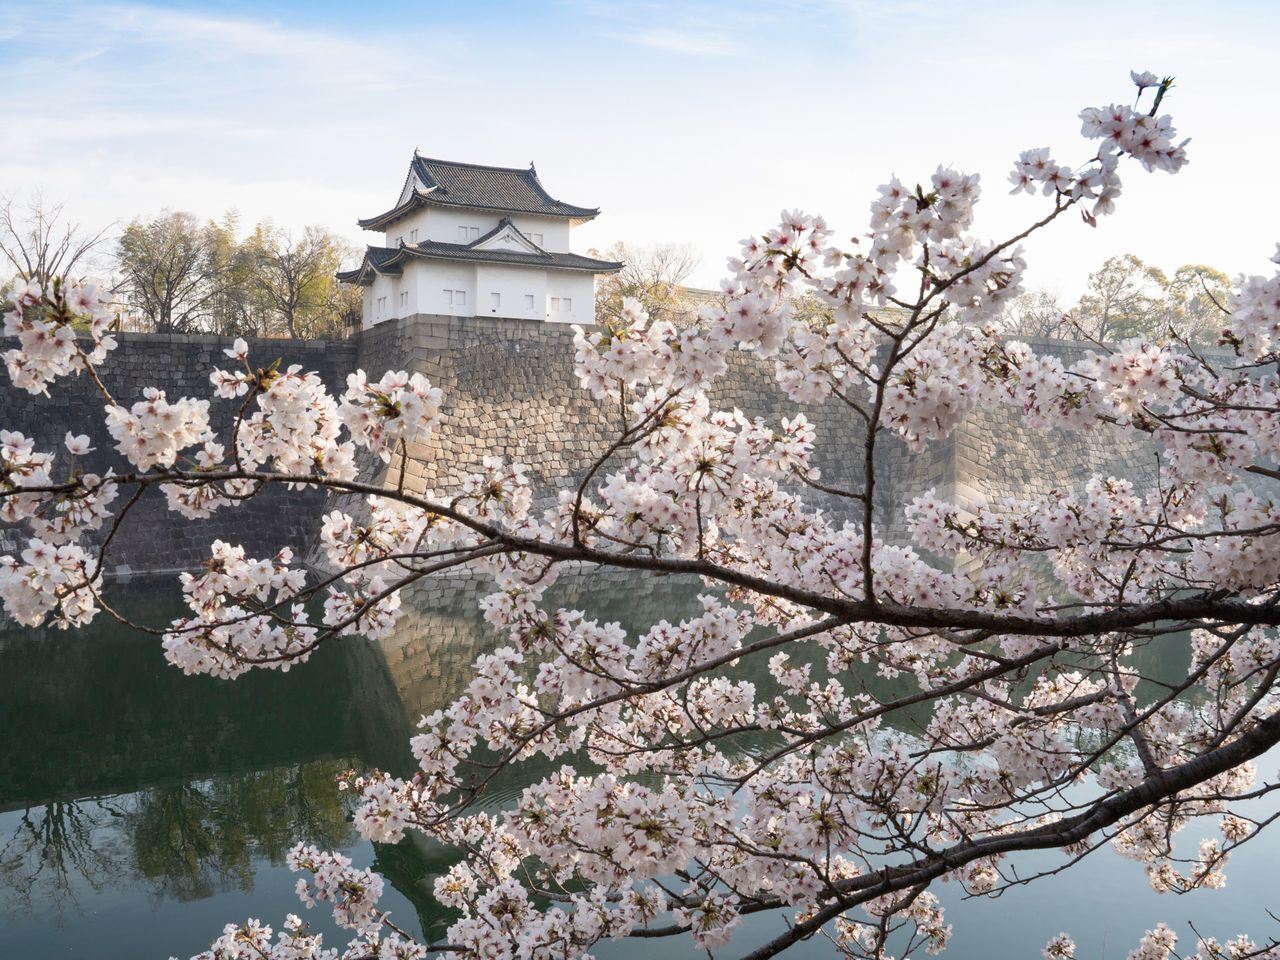 За цветущими вдоль замкового рва деревьев сакуры сорта сомэй-ёсино виднеется башня Рокубан-ягура, имеющая статус ценного культурного достояния